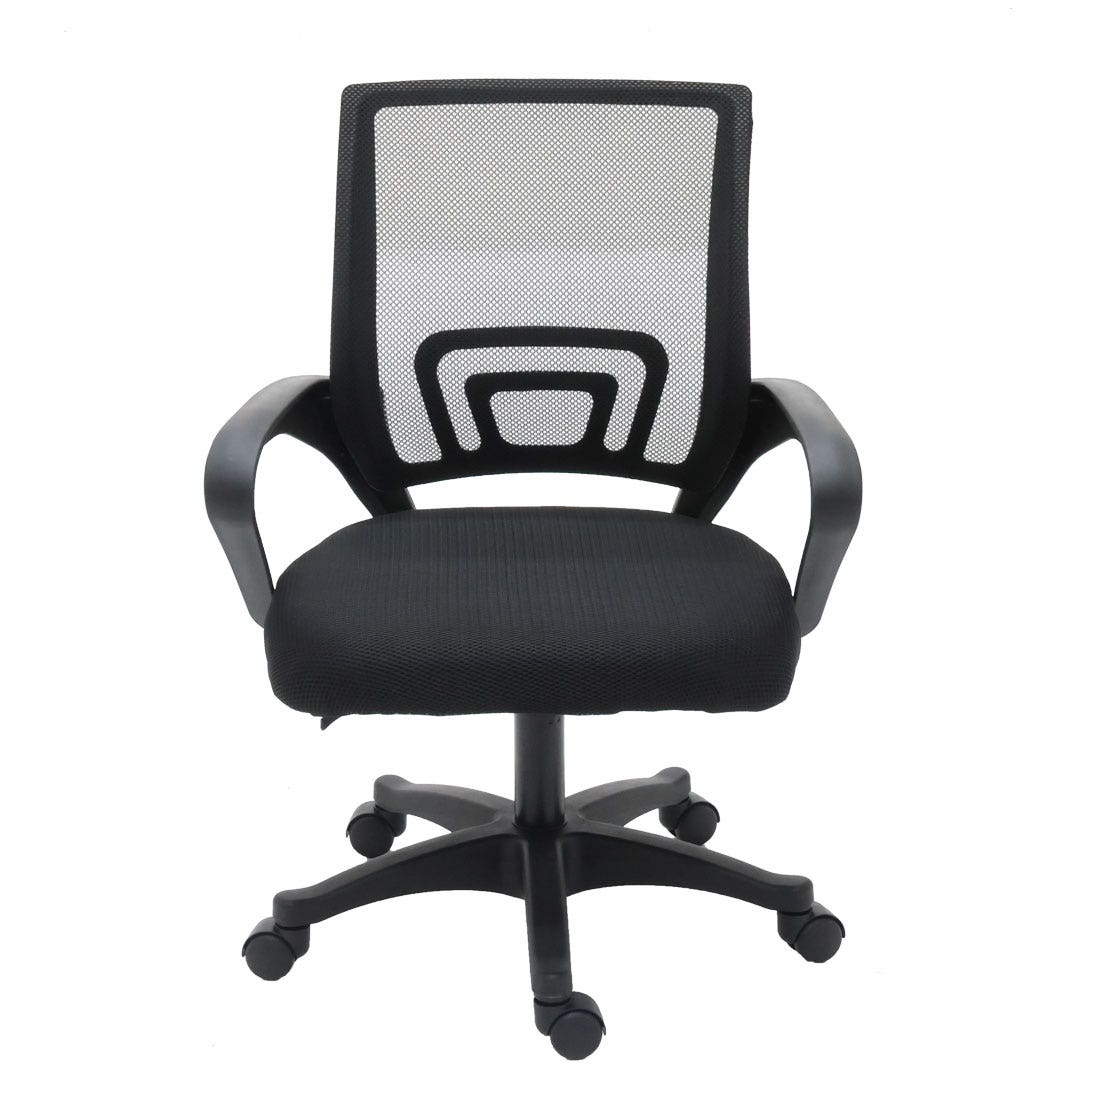 เก้าอี้สำนักงาน รุ่น Laboby สีดำ1